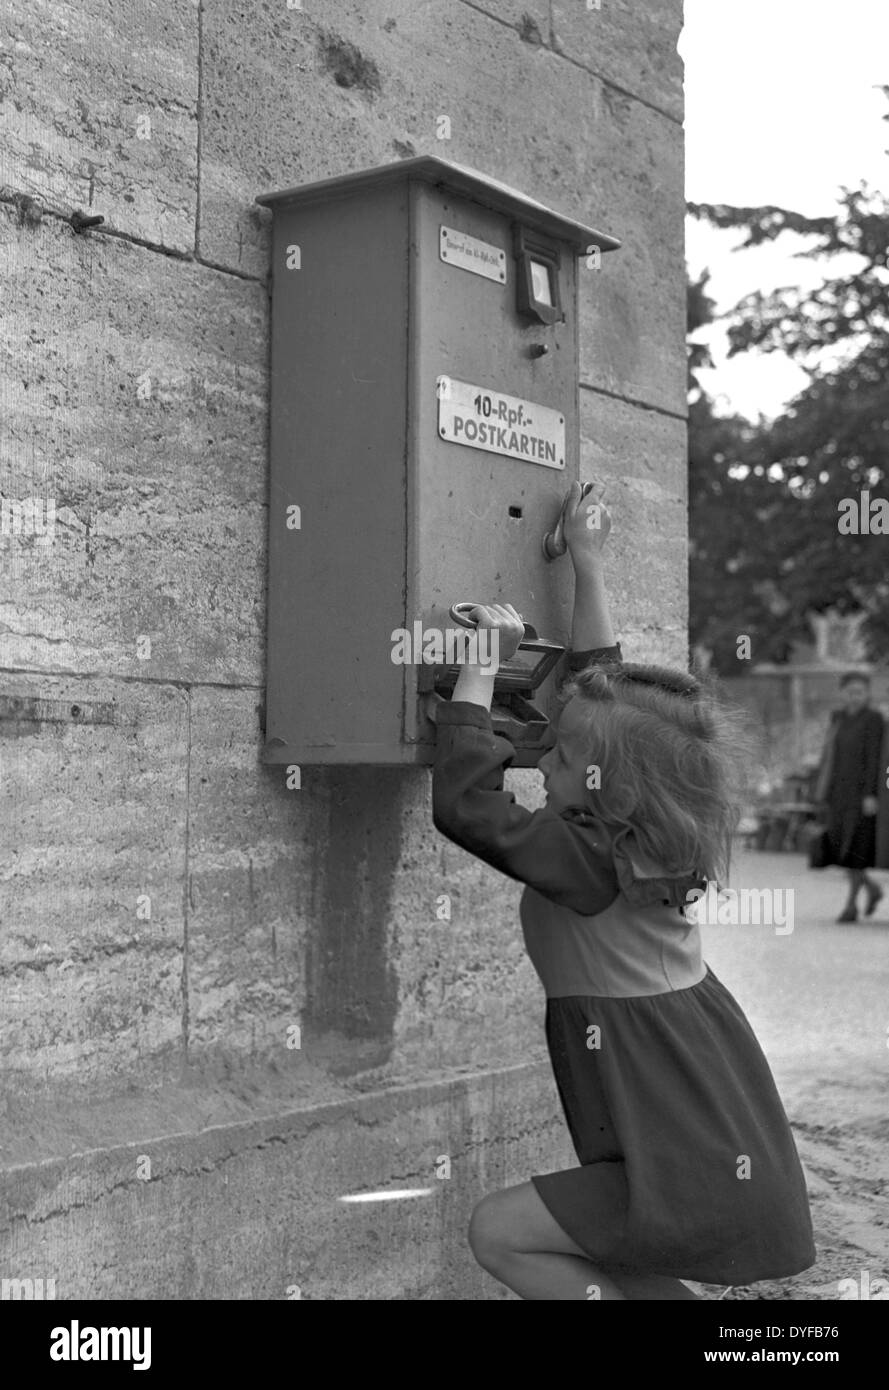 Eine Mädchen spielt mit einem Automaten für Postkarten, die für 10 Reichspfennig, Berlin, 1948 gekauft werden konnte. Bis Juni 1948 die neue Währung eingeführt wurde, war die Reichsmark in den westlichen Besatzungszonen noch gültig. Mit der Einführung der Deutschen Mark verloren die alte Währung seine Gültigkeit. Foto: Zbarchiv - blockiert für Bildübertragung Stockfoto